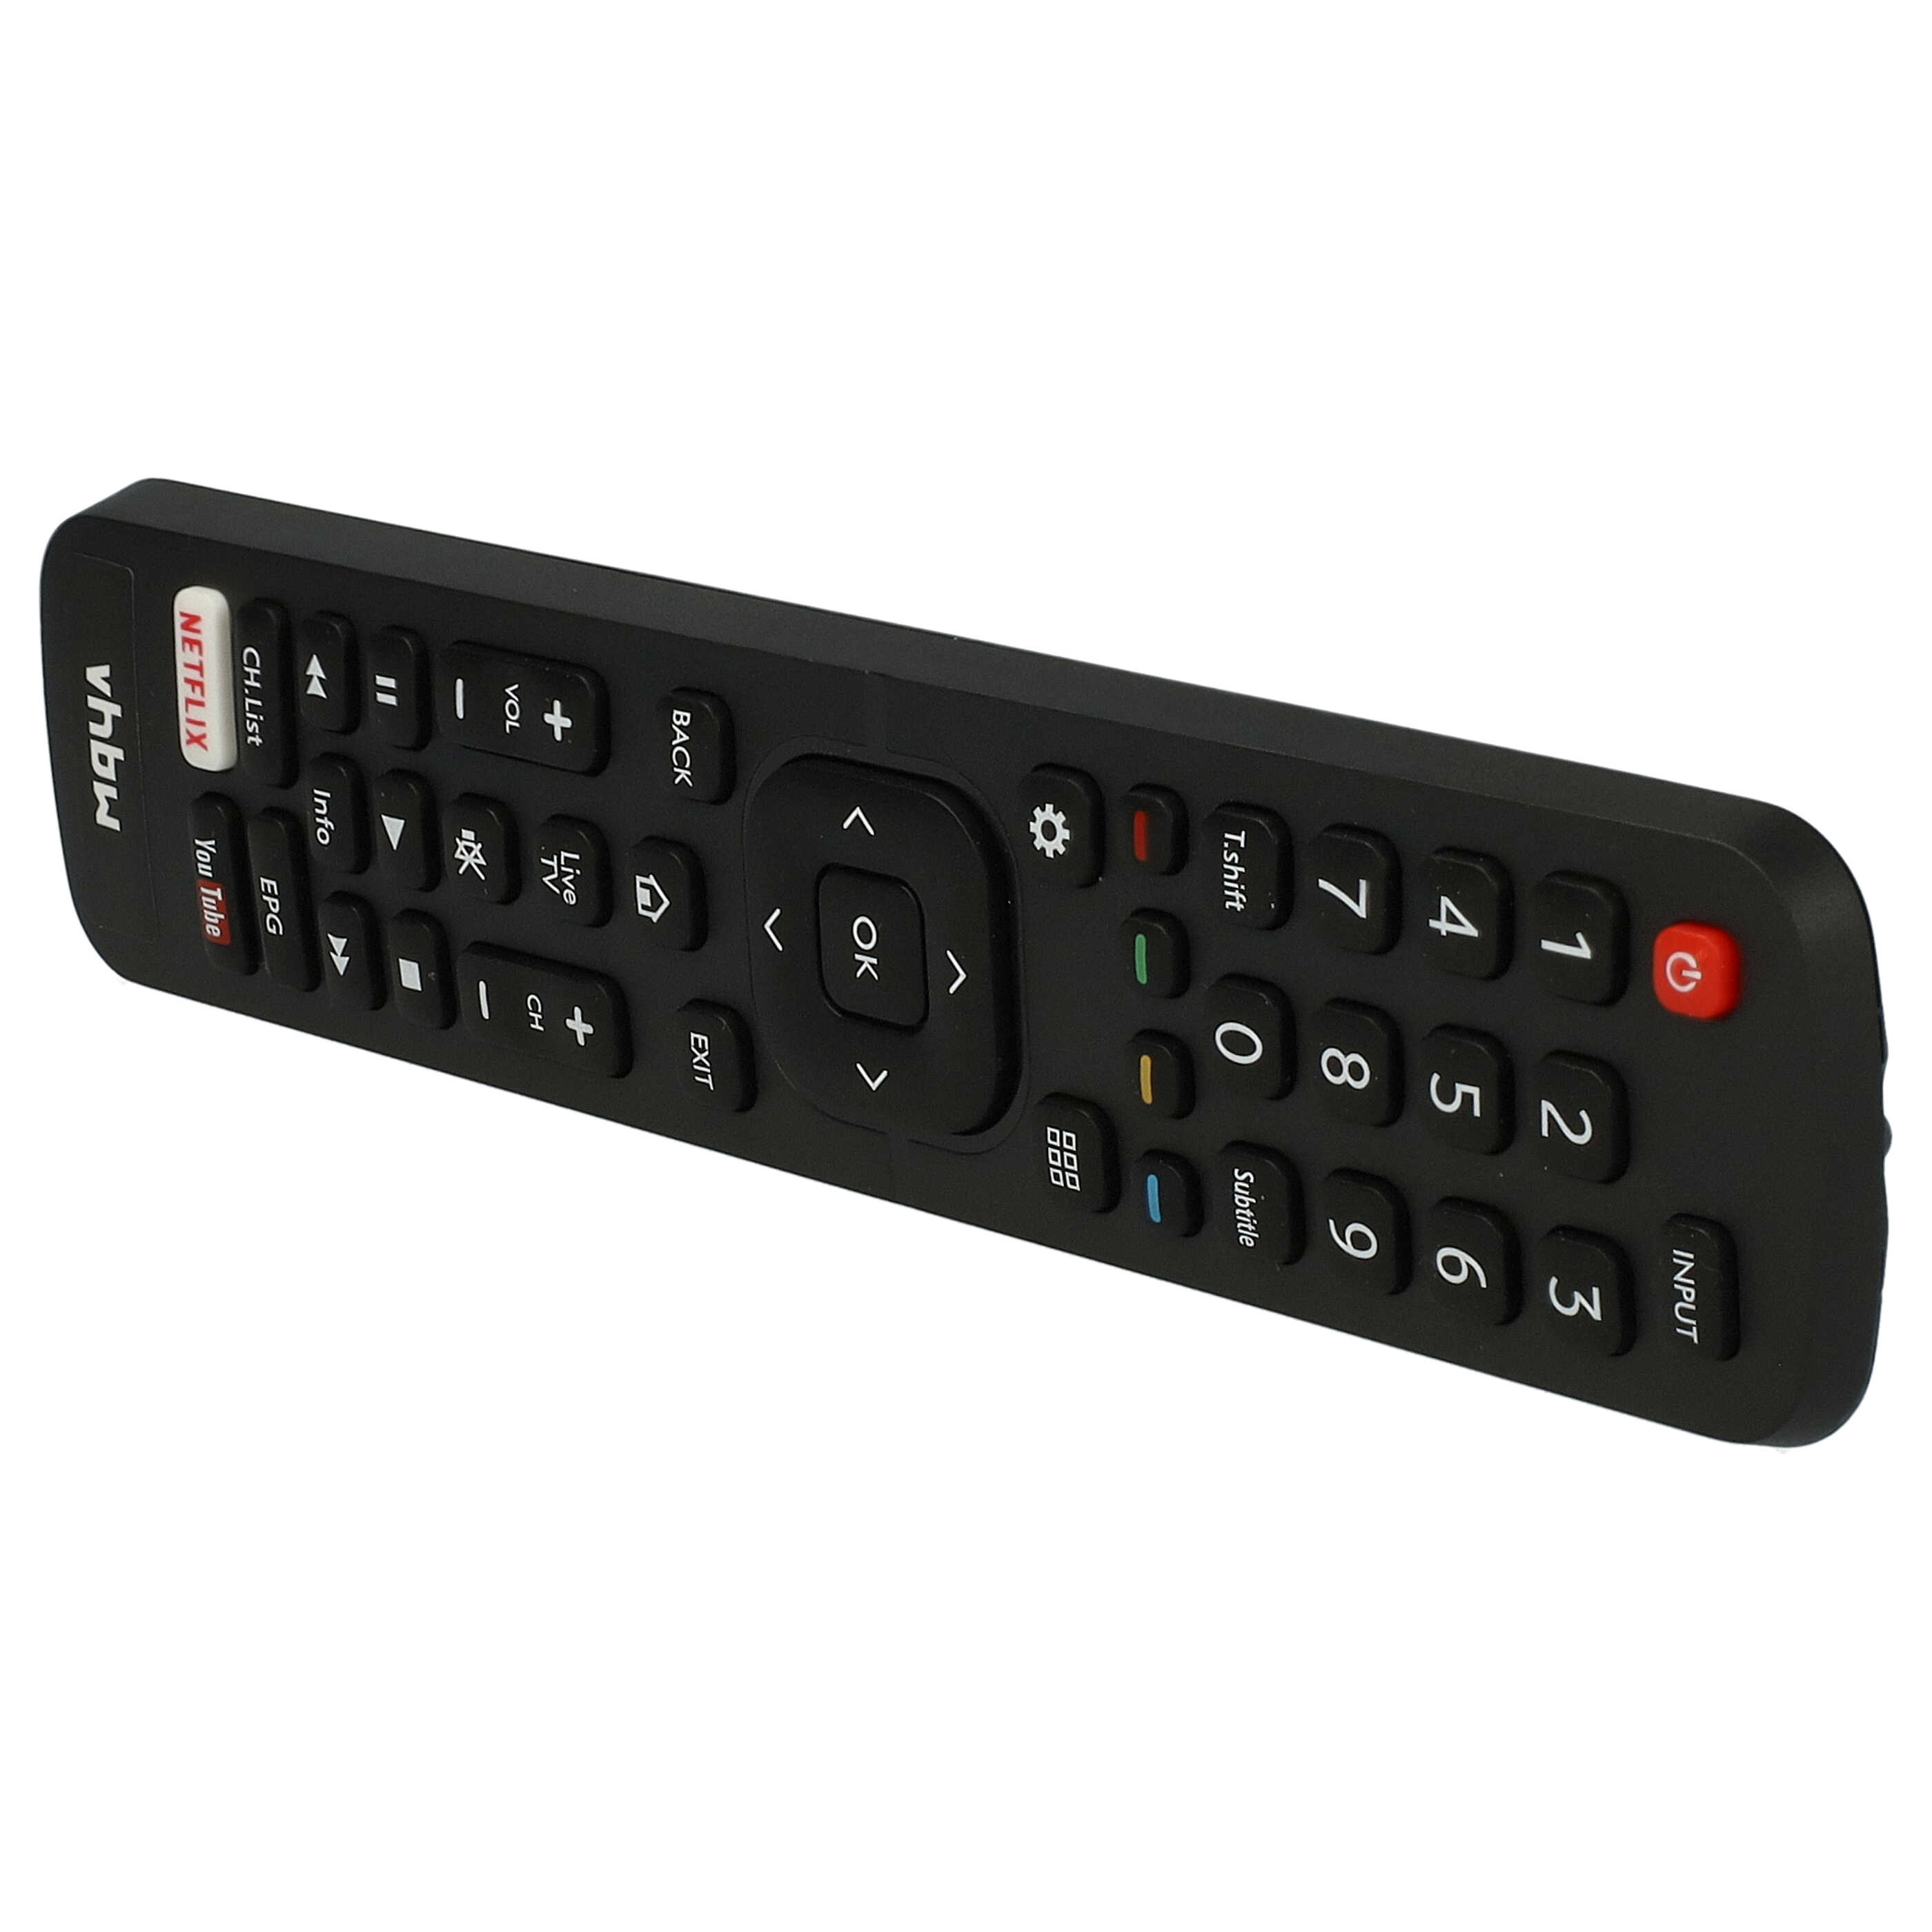 Remote Control replaces Hisense ER31607R, ER22655HS, ER22642R, ER22641R, EN2B27 for Hisense TV